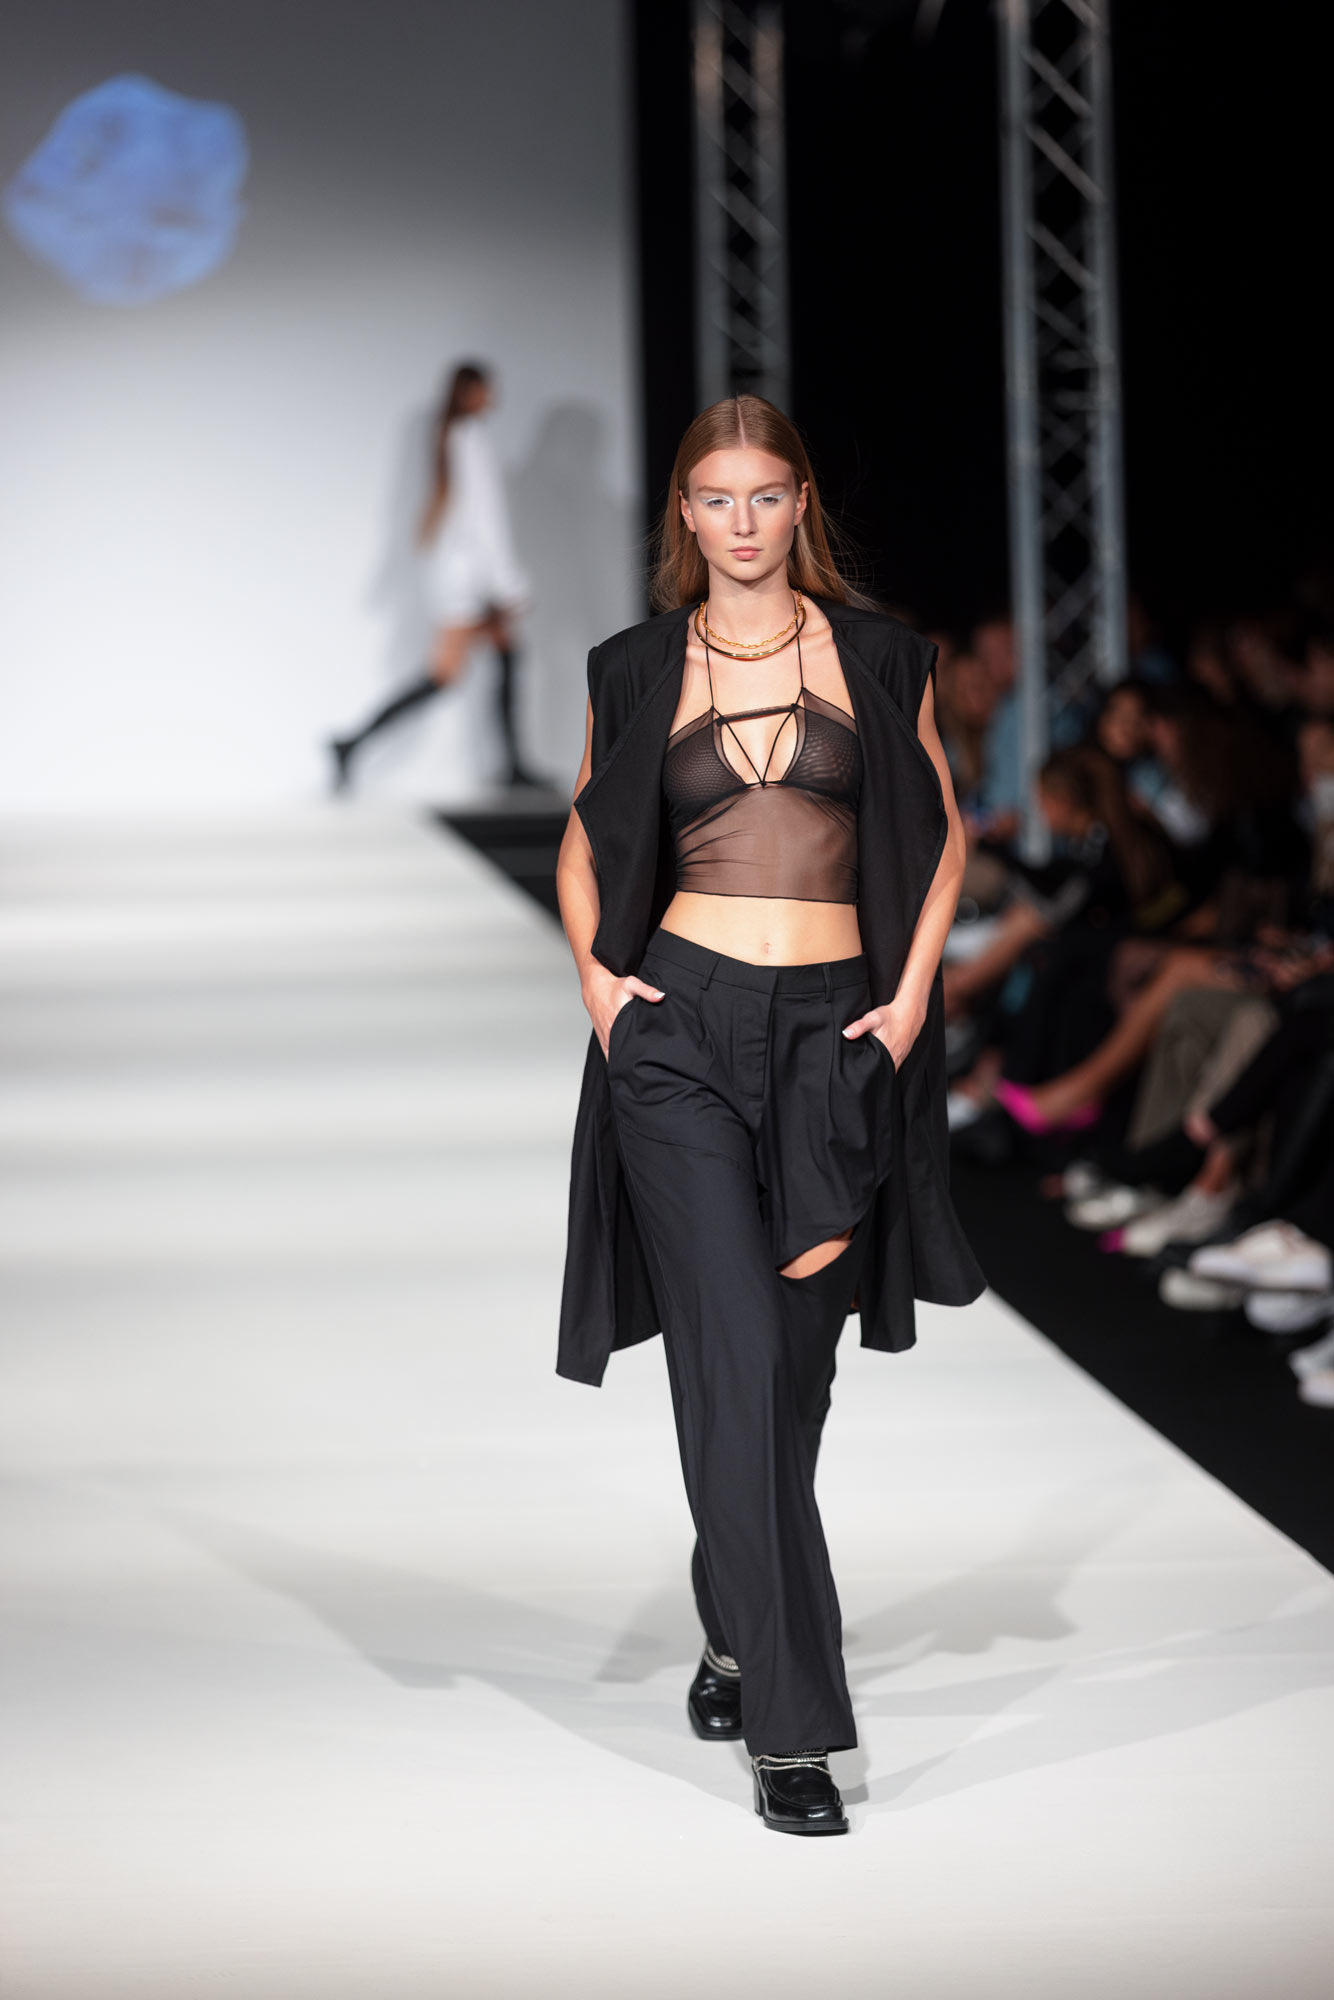 Ein Model in einem schwarzen Outfit und einem schwarzen BH geht einen Laufsteg auf der Vienna Fashion Week entlang